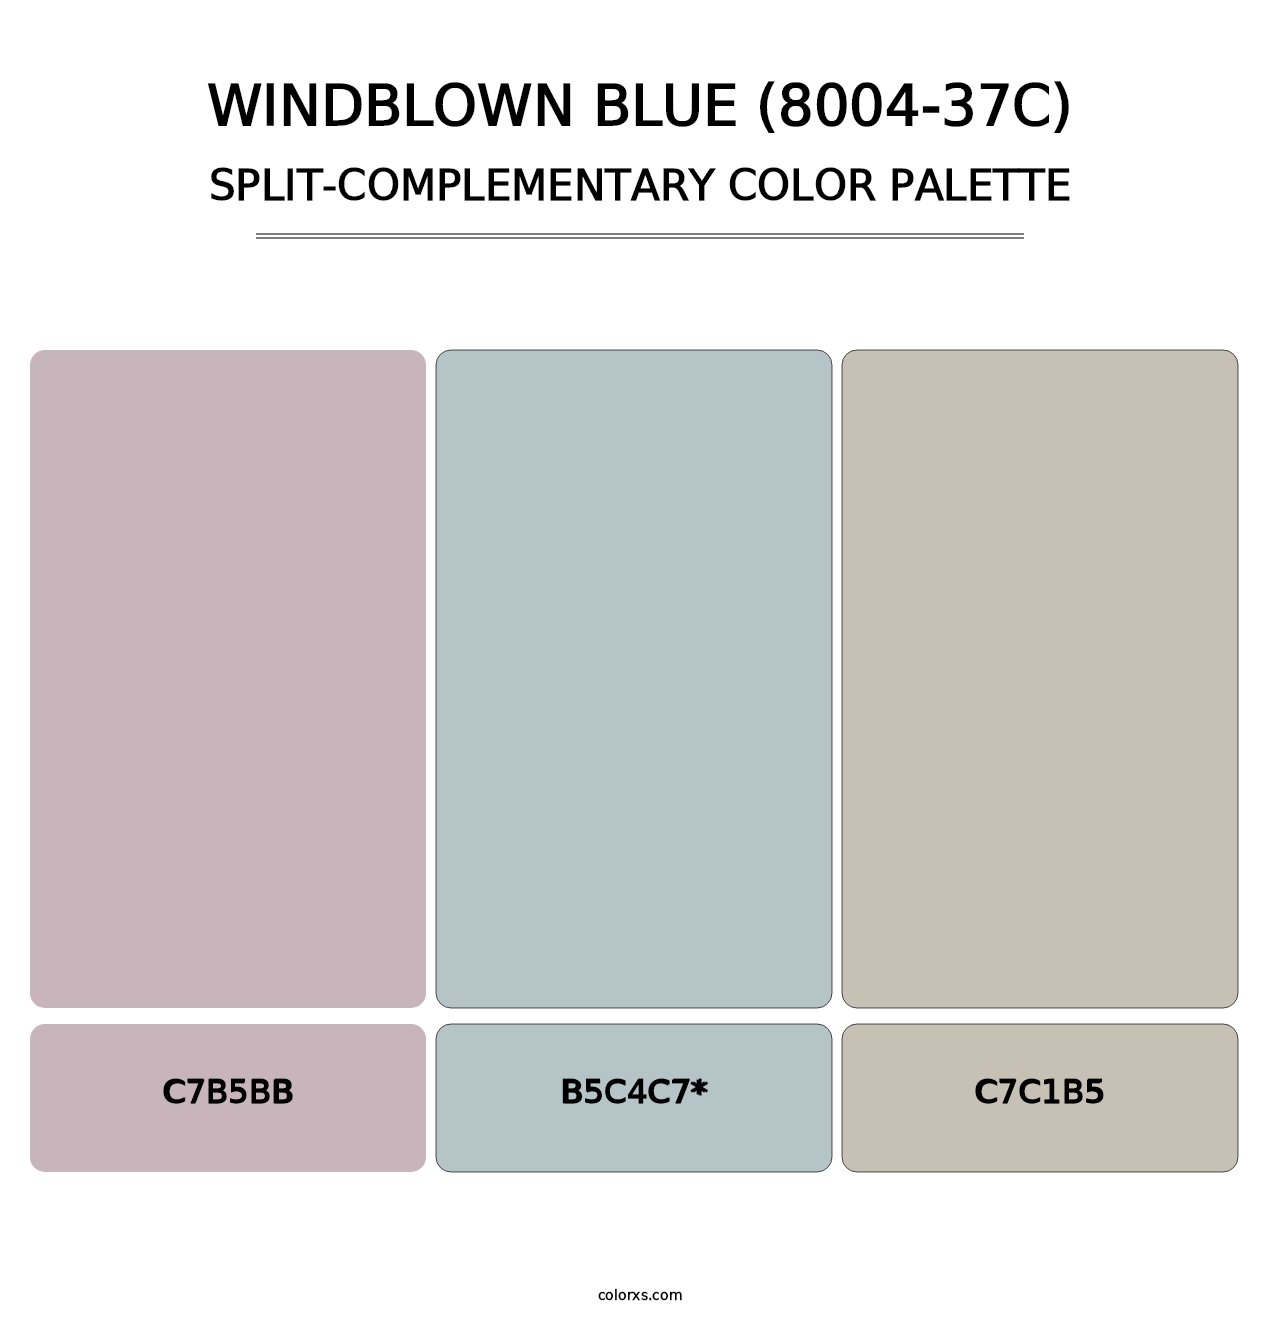 Windblown Blue (8004-37C) - Split-Complementary Color Palette